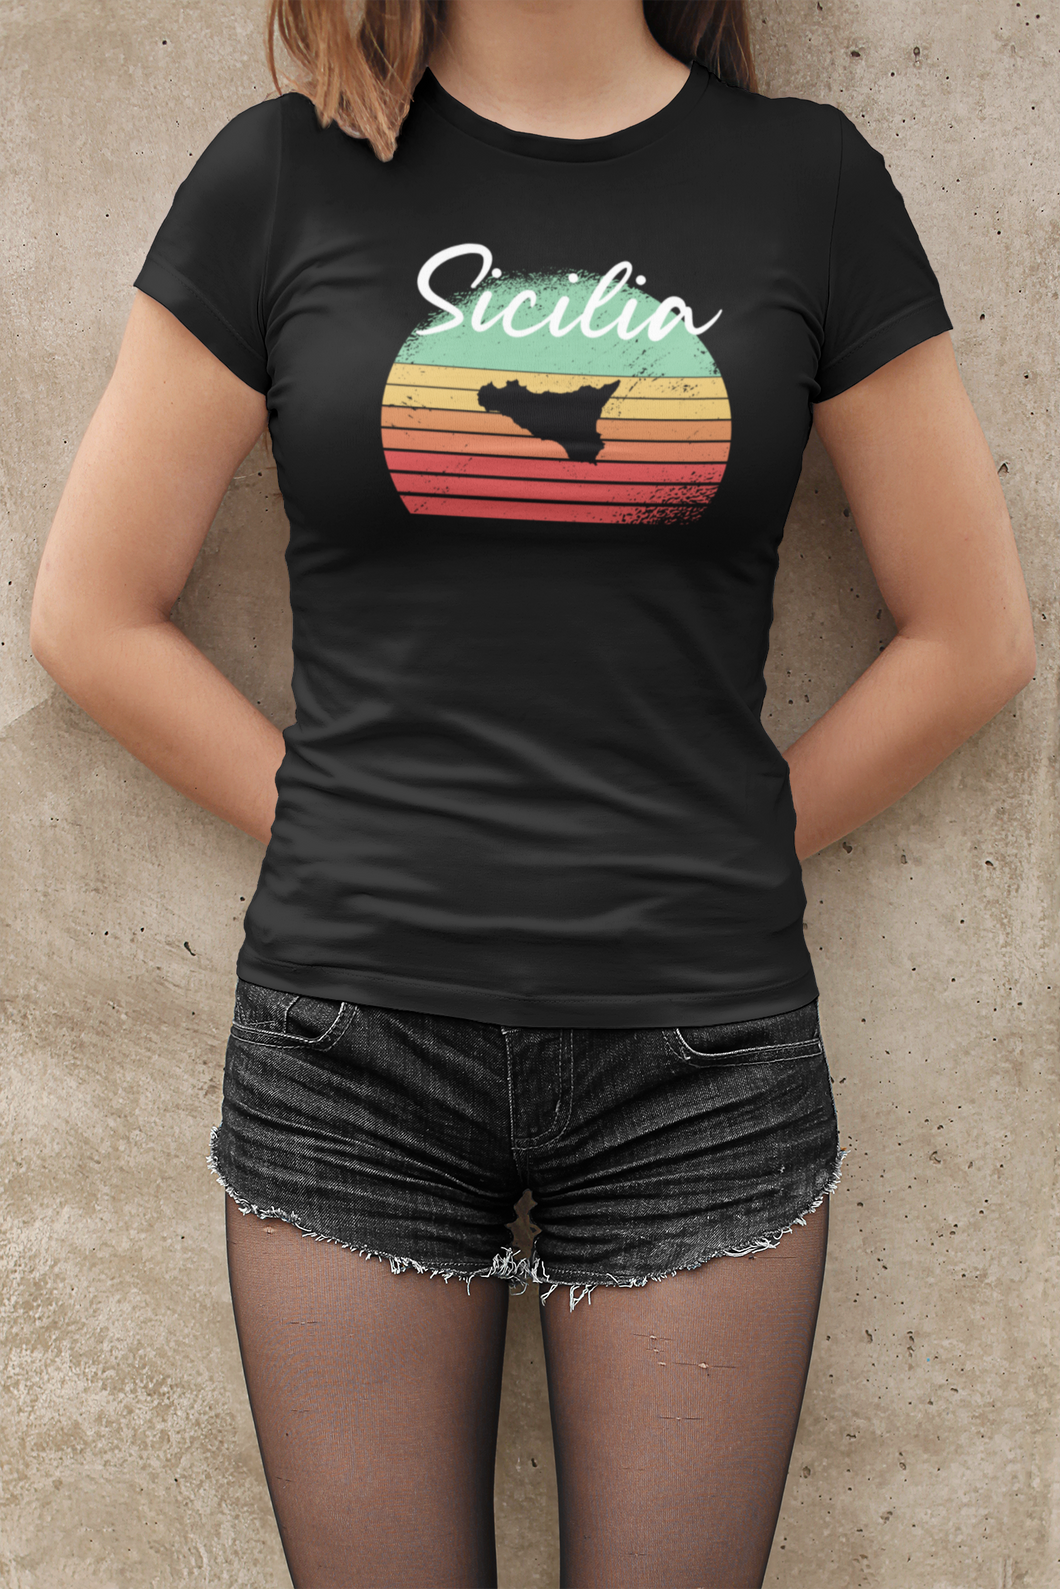 Damen  T-Shirt - Sicilia Retro Sunset - schwarz kurzarm Rundhals Bio Baumwolle italien Sizilien